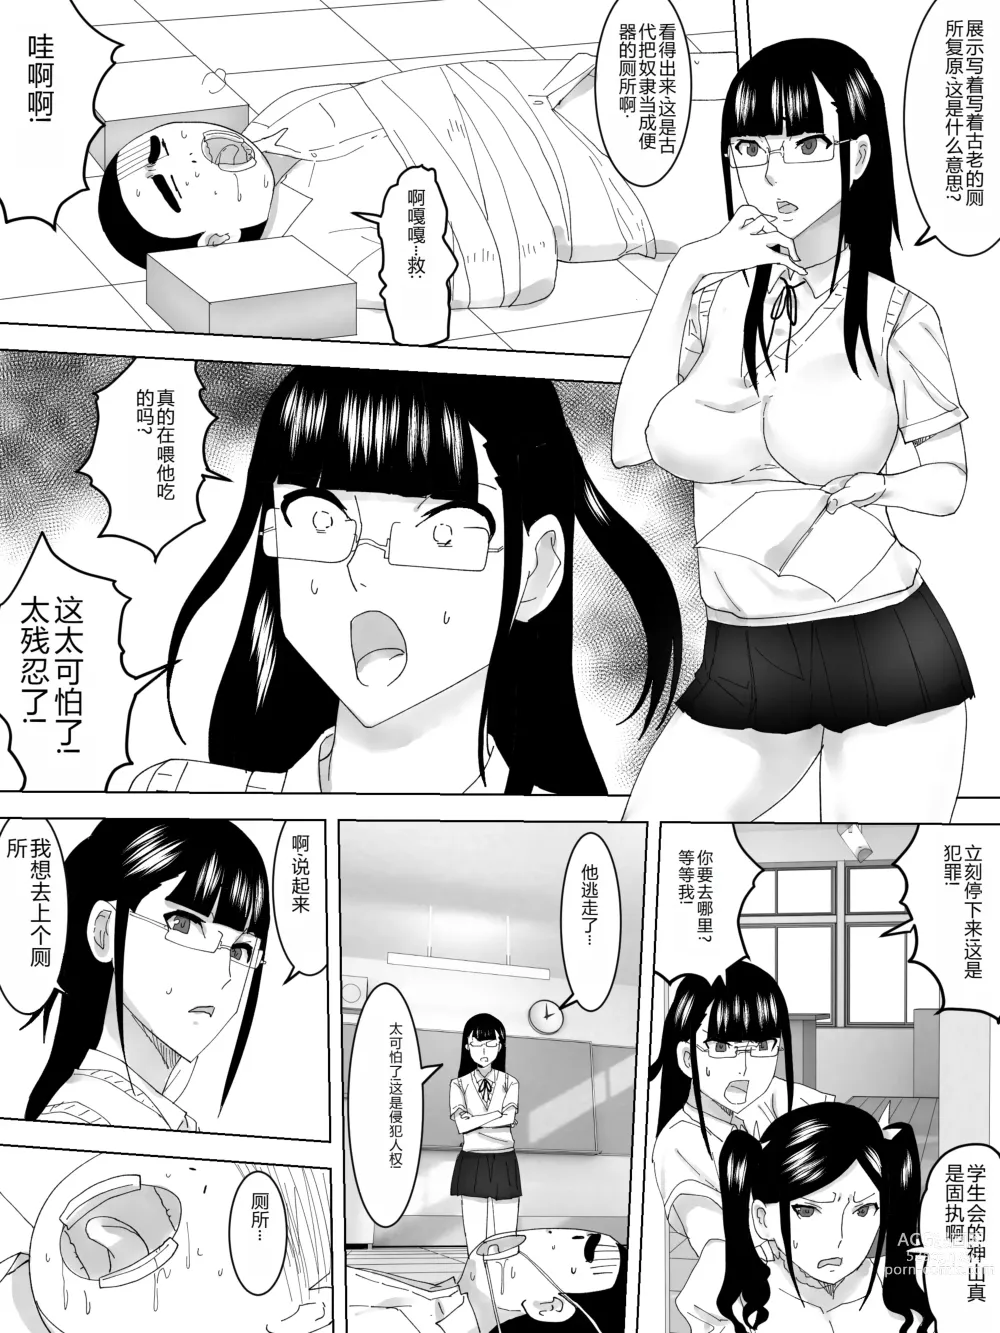 Page 12 of doujinshi Gakuensai no joshi toire